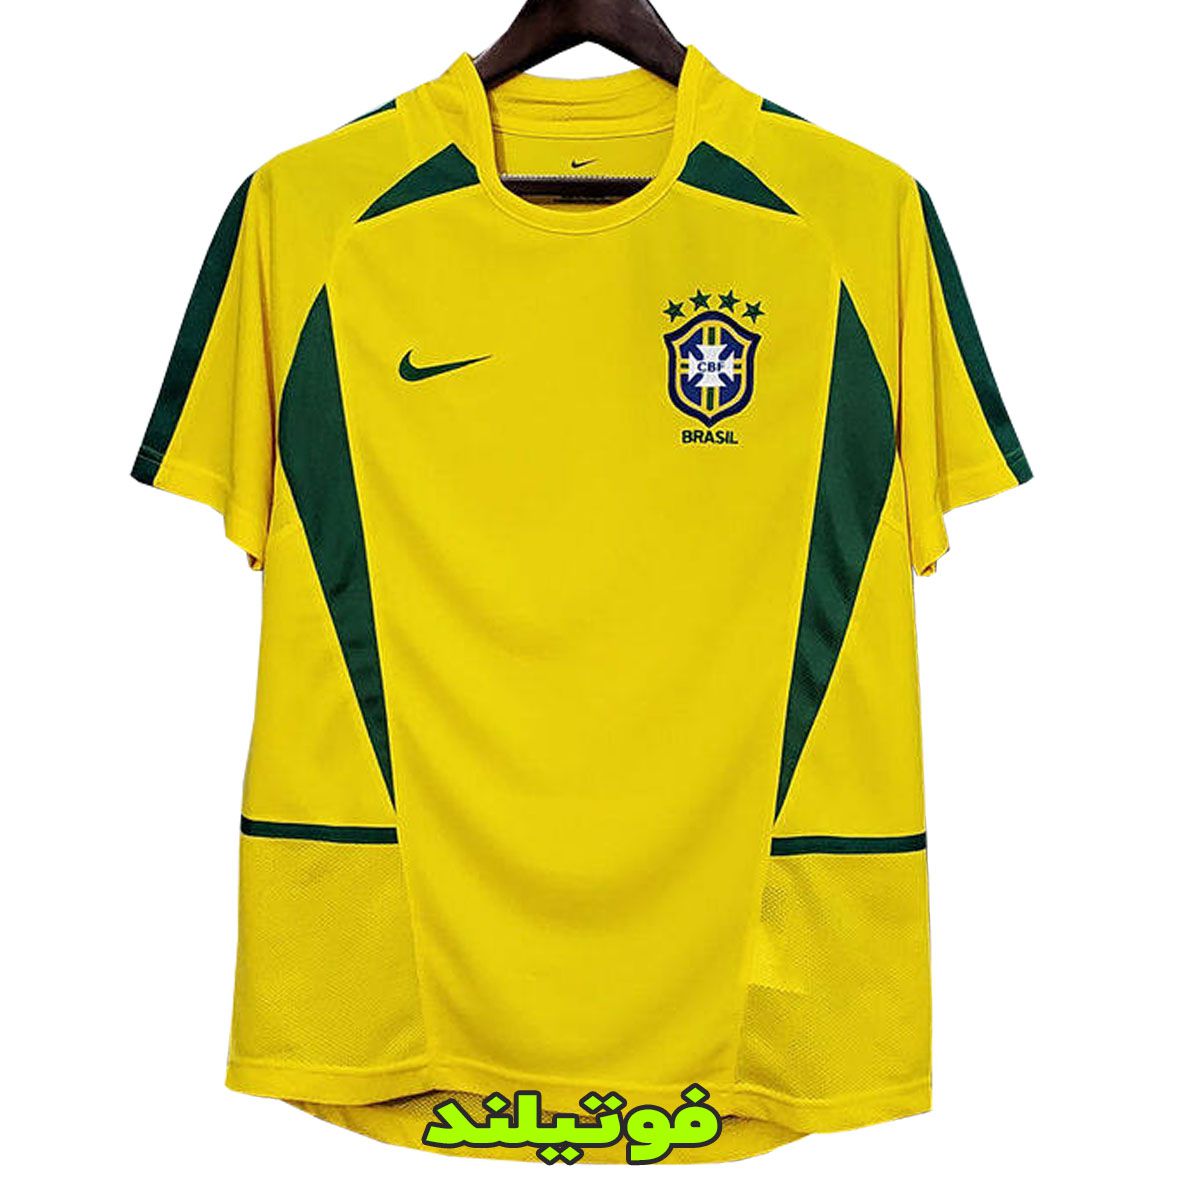 لباس کلاسیک برزیل 2002